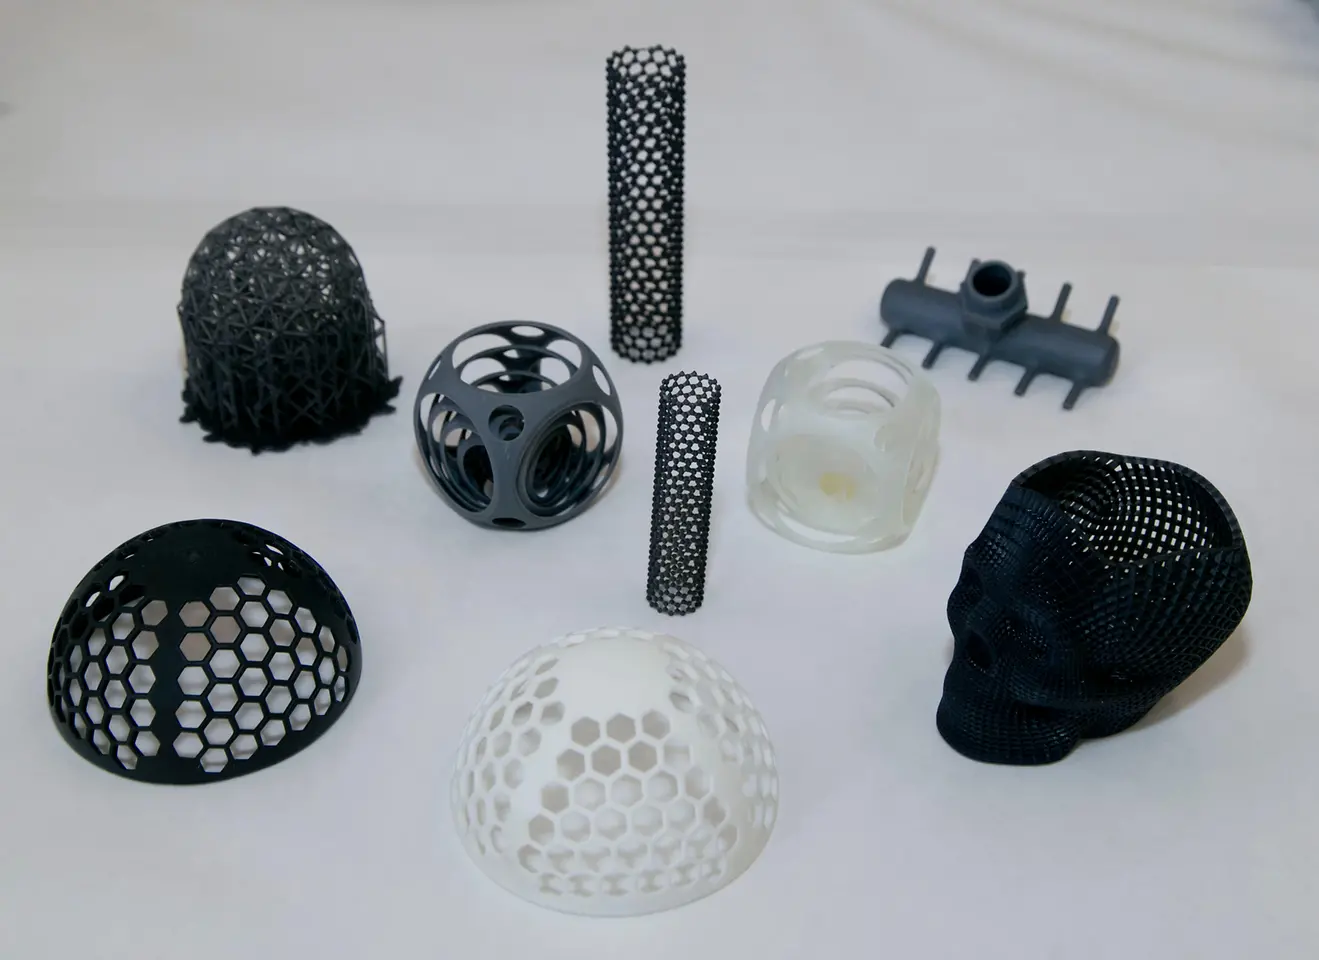 3D-gedruckte Prototypen in verschiedenen Formen und Größen.